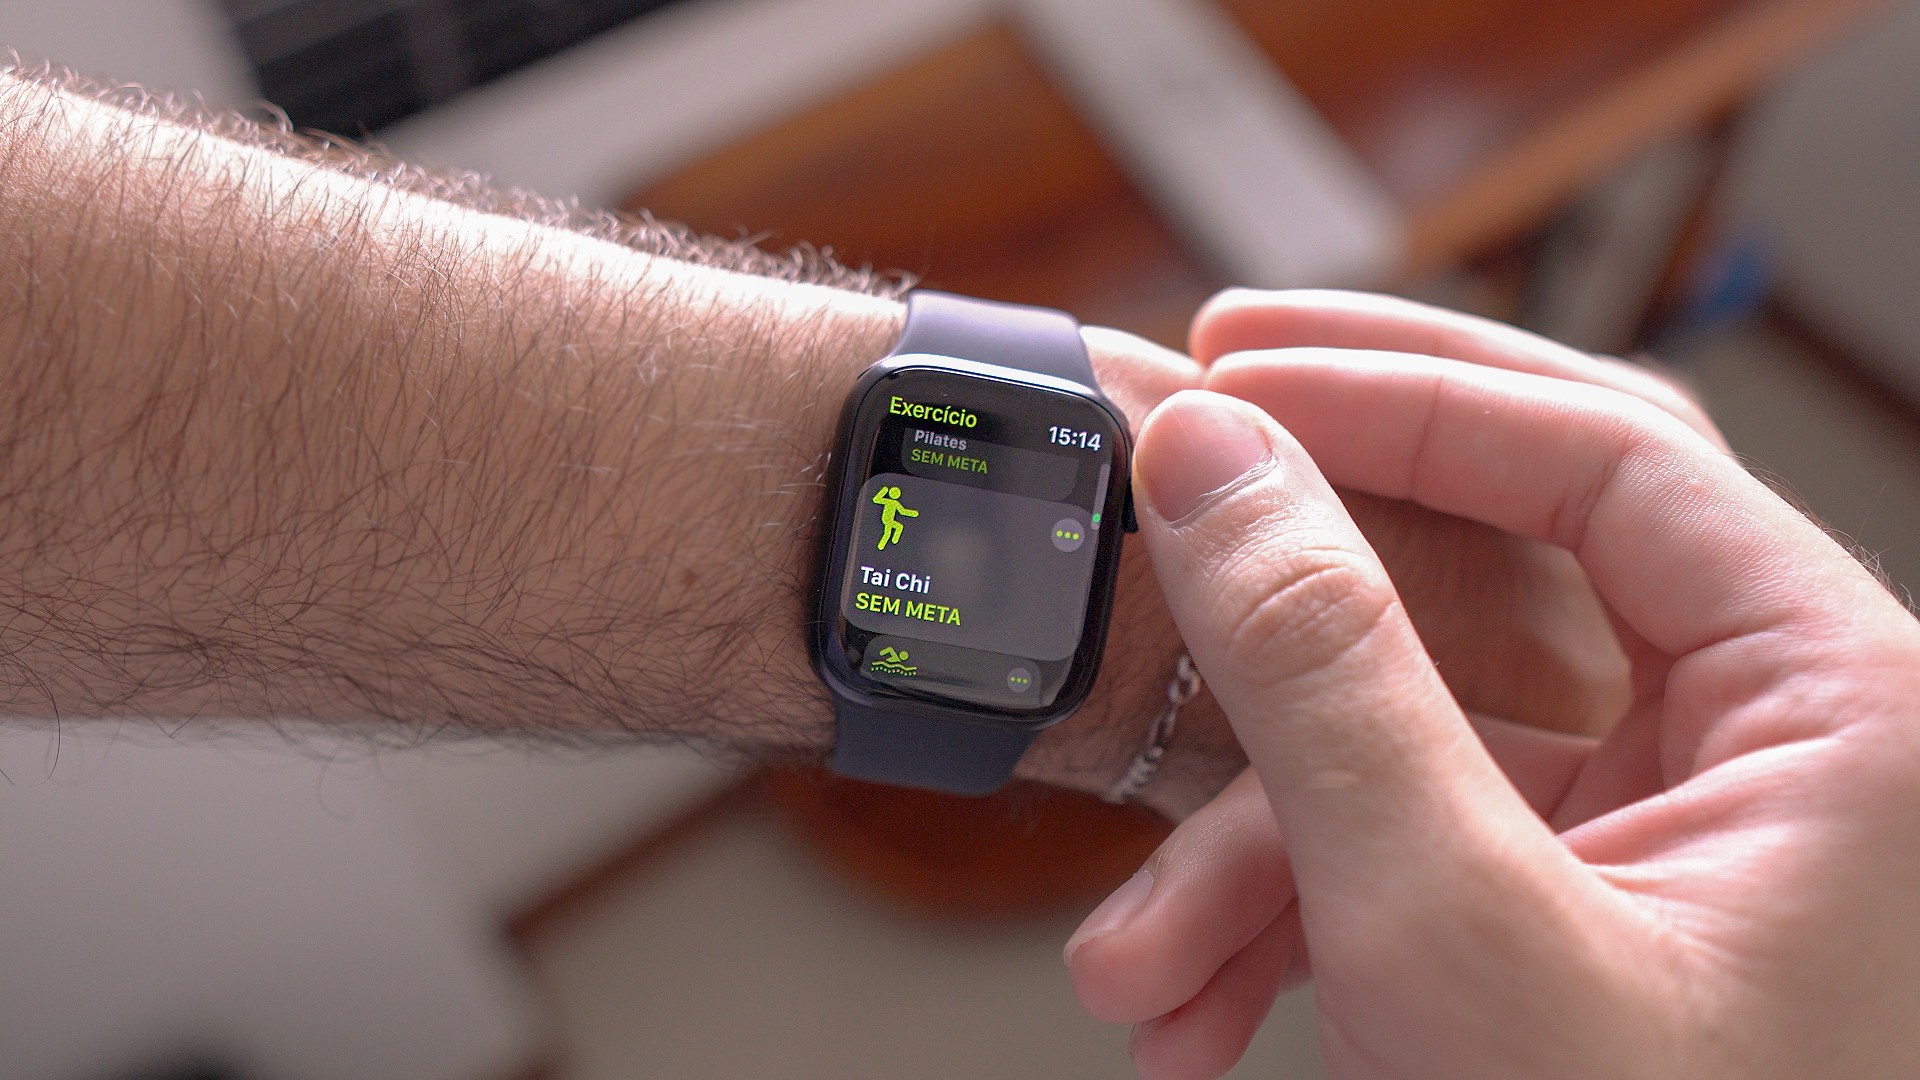 Apple promove apps de saúde e fitness encorajando usuários a se exercitarem com produtos da marca